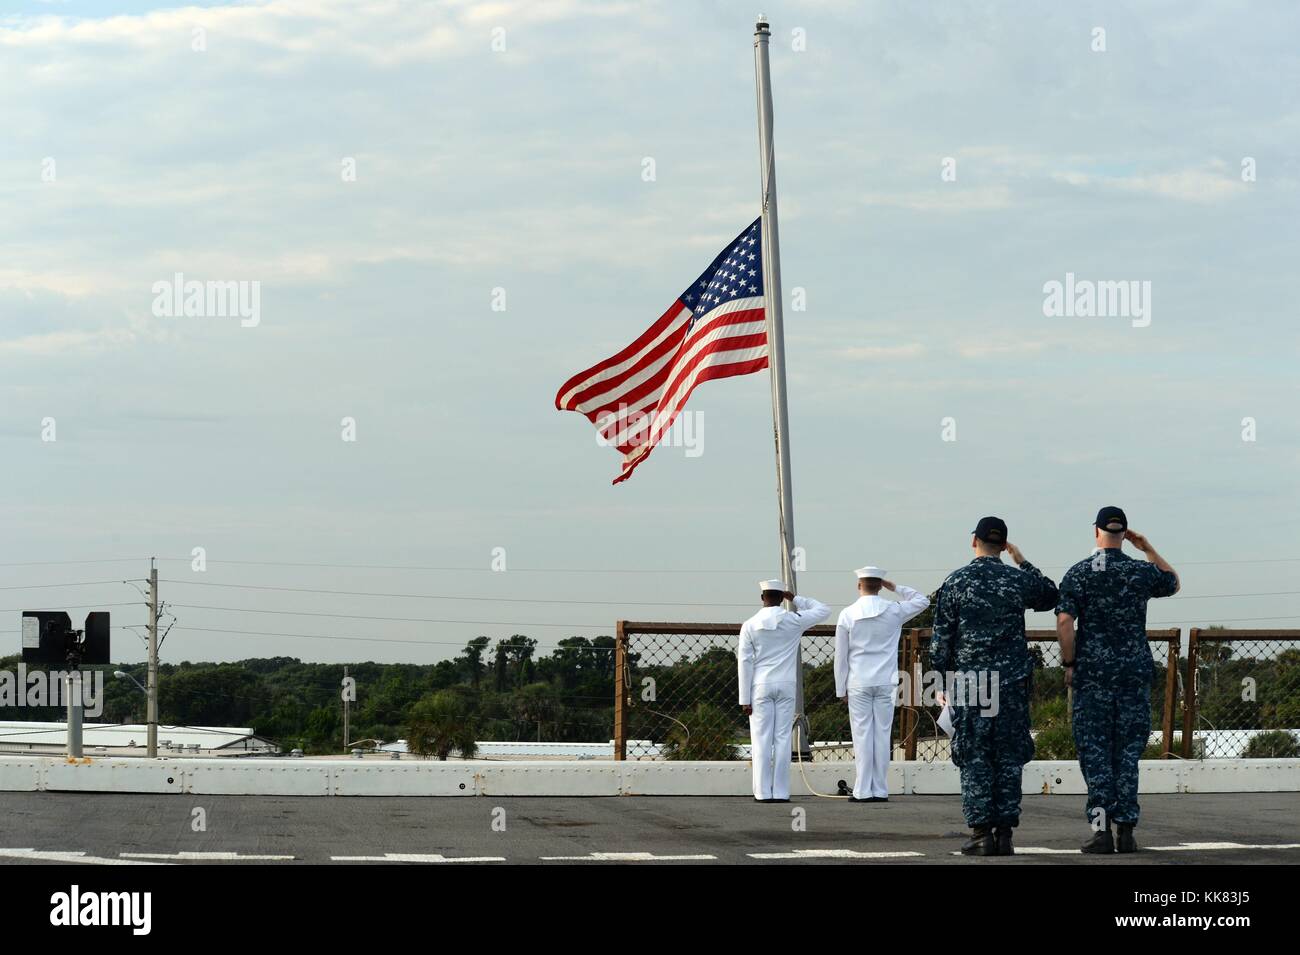 I marinai osservare i colori del mattino a bordo il trasporto anfibio dock nave USS New York, Mayport, Florida. Immagine cortesia la comunicazione di massa Specialist 1a classe John S. Smolinski/US Navy, 2015. Foto Stock